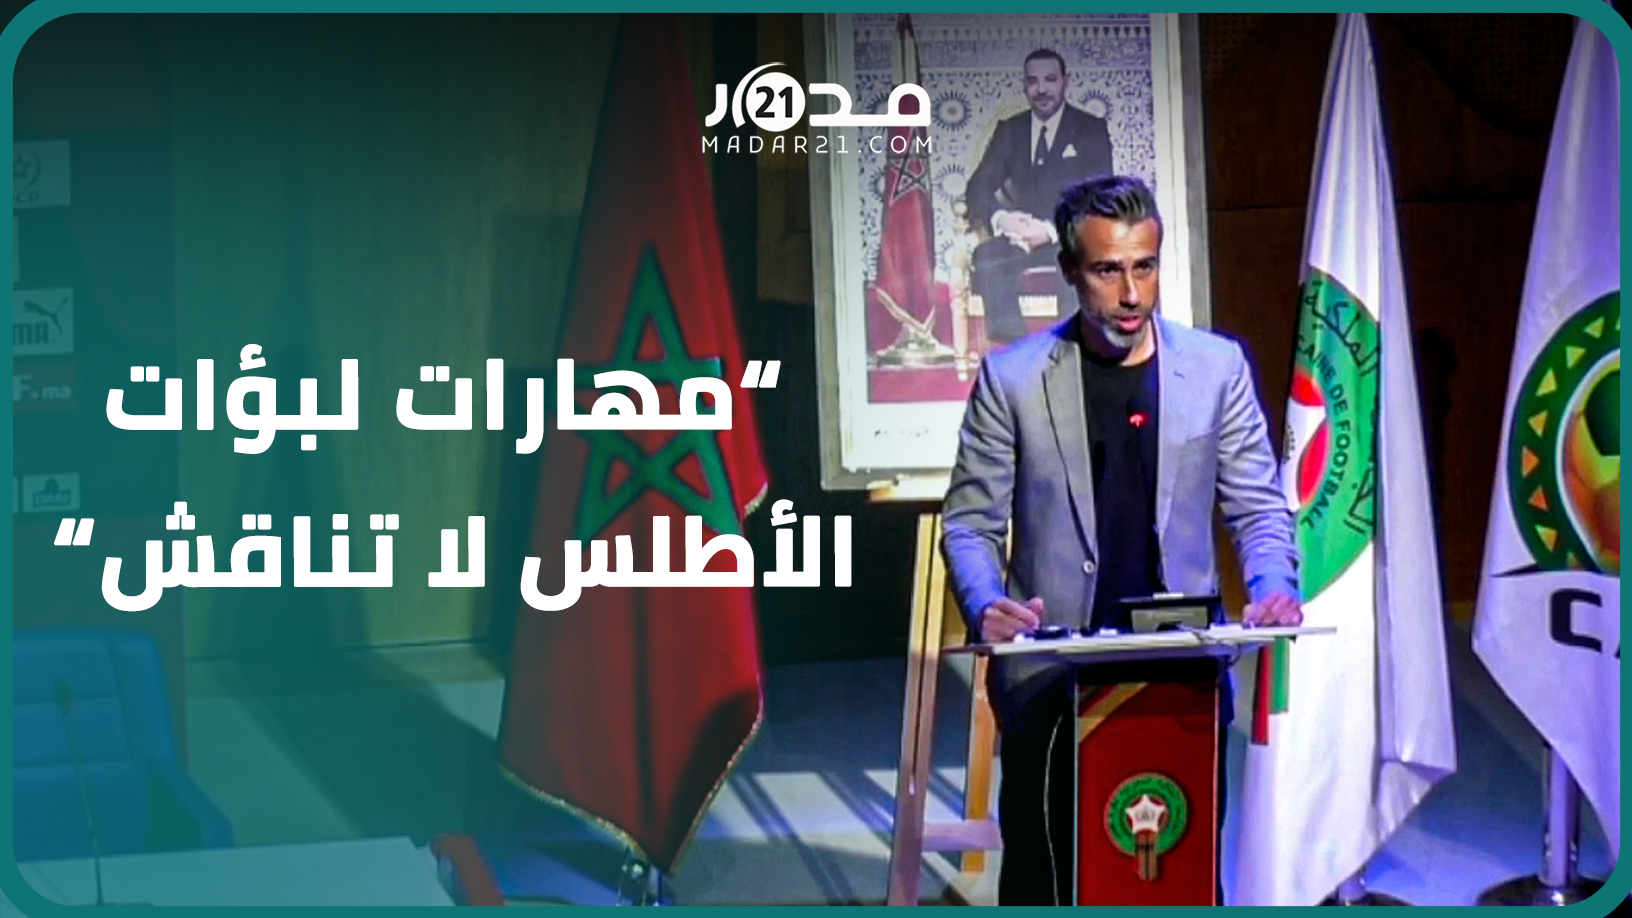 خورخي فيلدا: مهارات لبؤات الأطلس لا تناقش وسنجعل من المنتخب السنوي مرآة تعكس هوية المغاربة